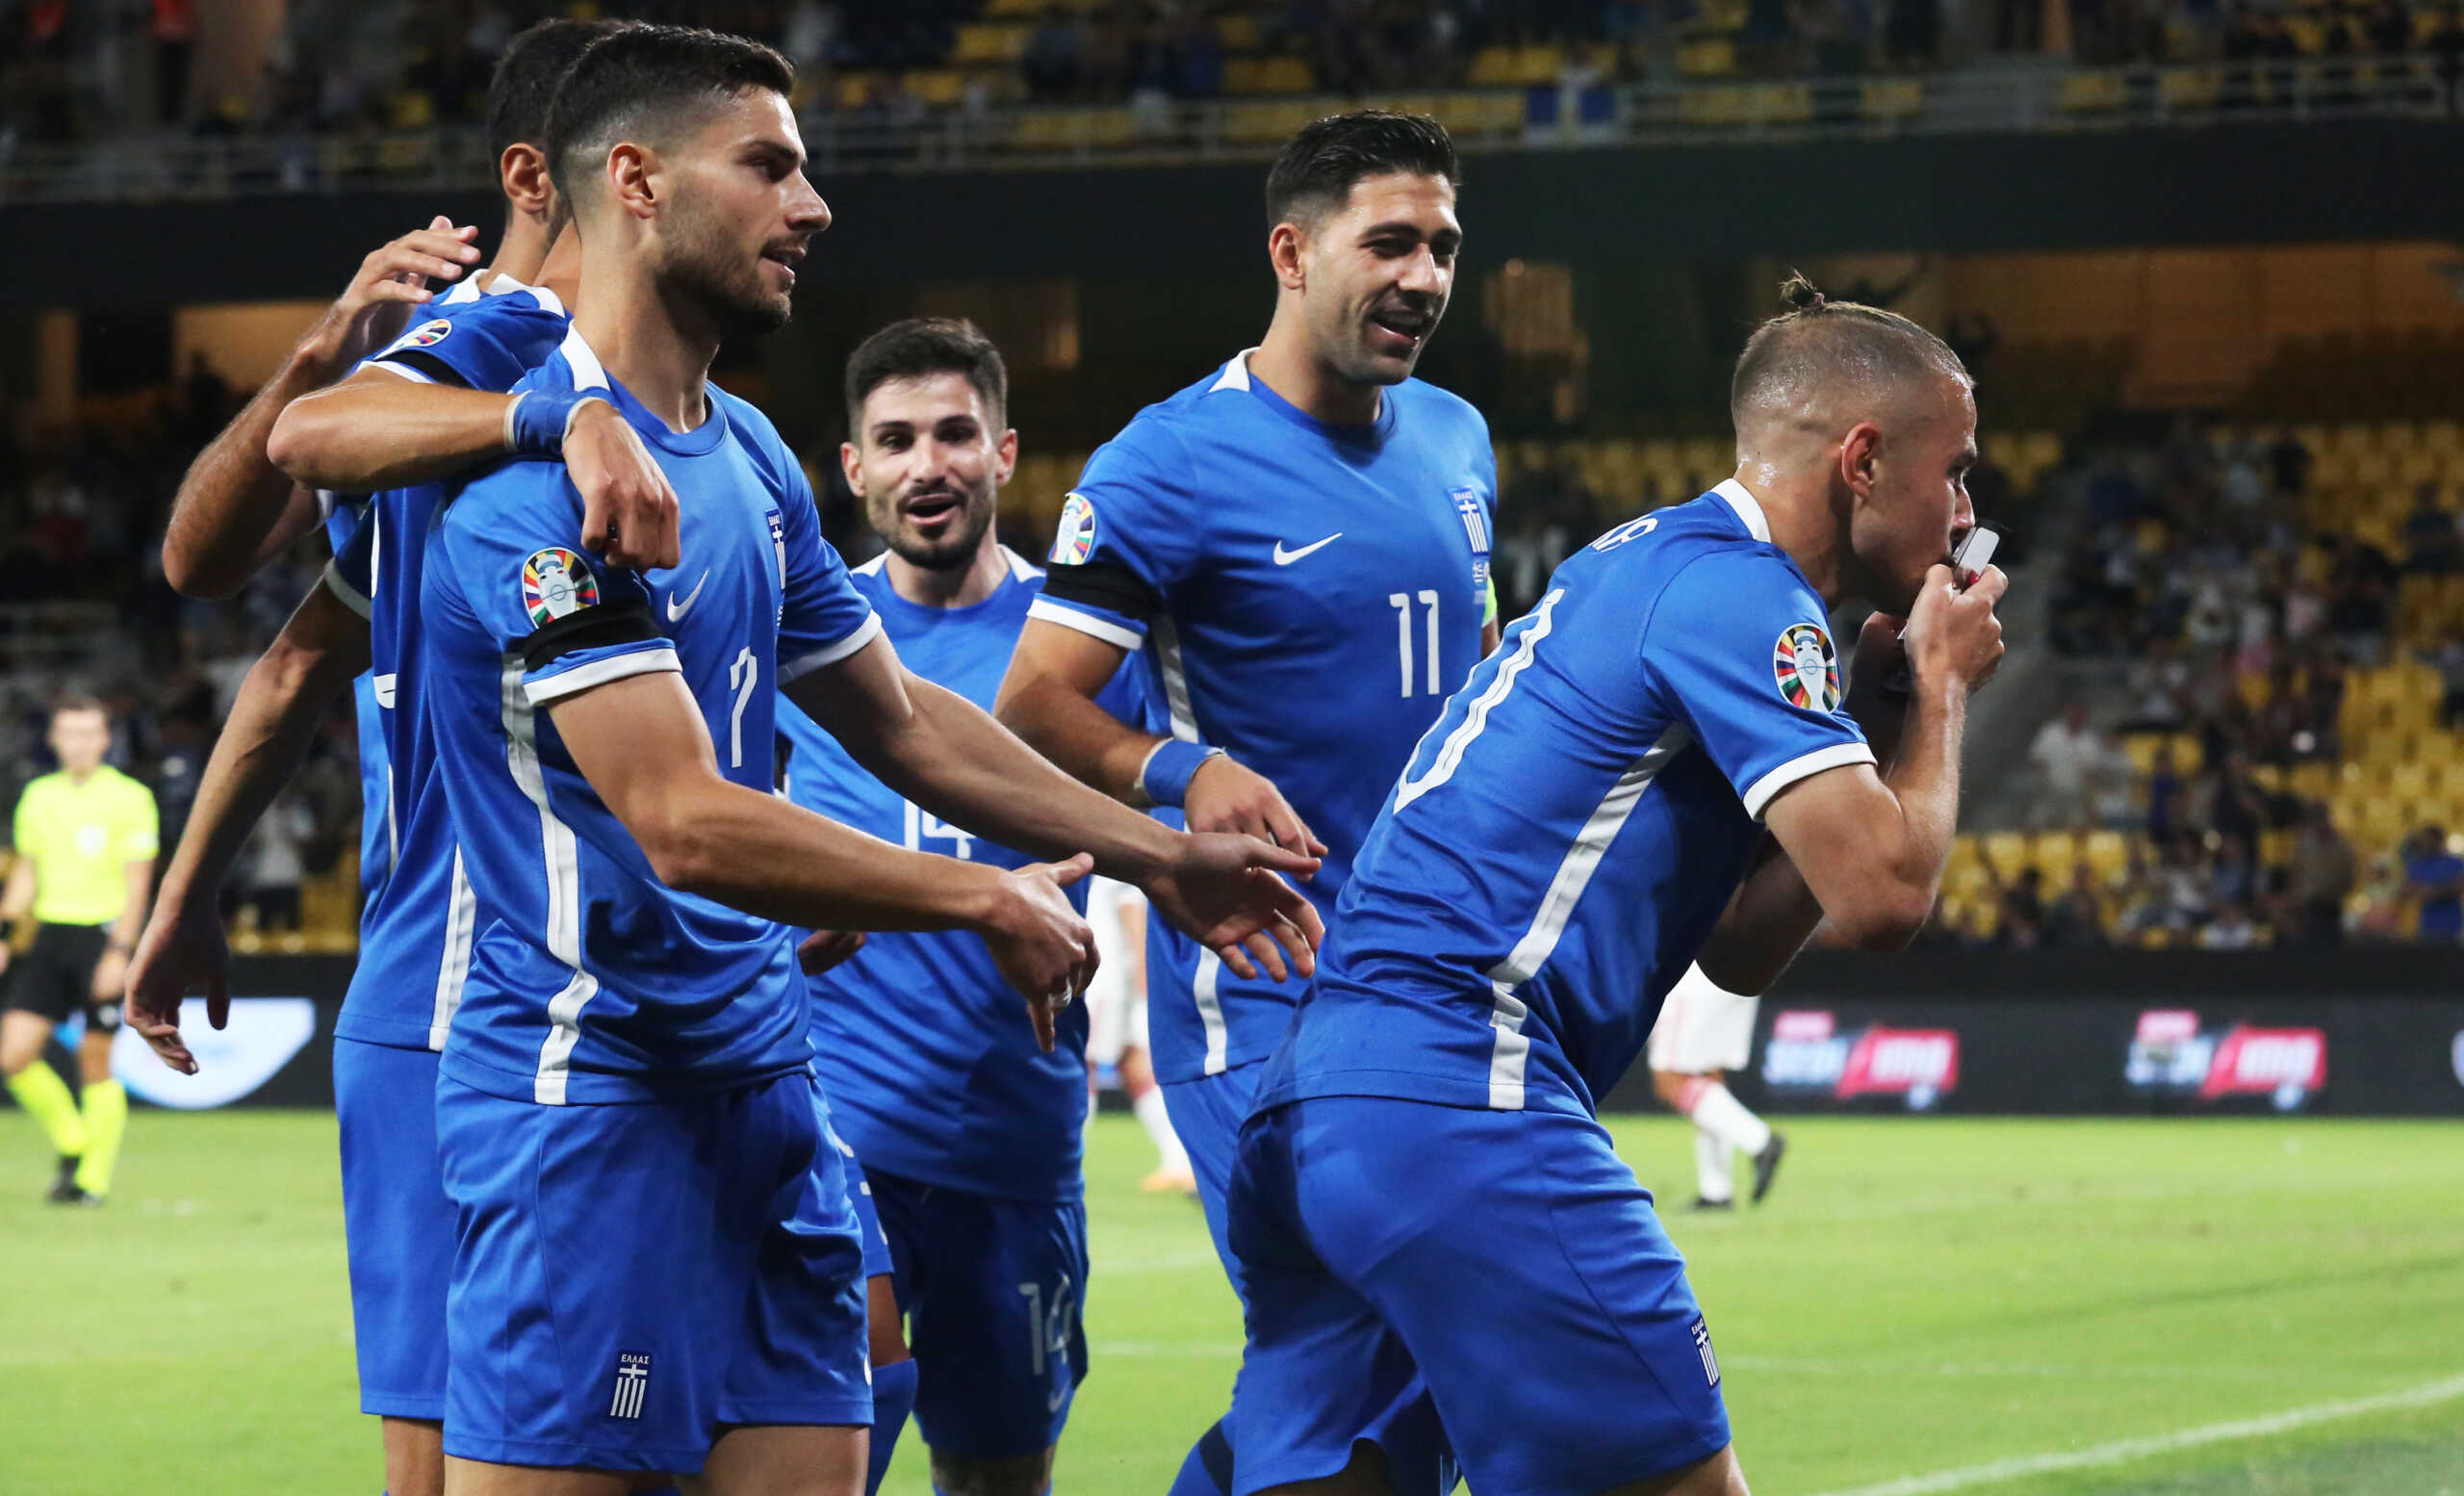 Ελλάδα – Νέα Ζηλανδία: Φιλικός αγώνας για την Εθνική ποδοσφαίρου πριν το μεγάλο ματς με τη Γαλλία